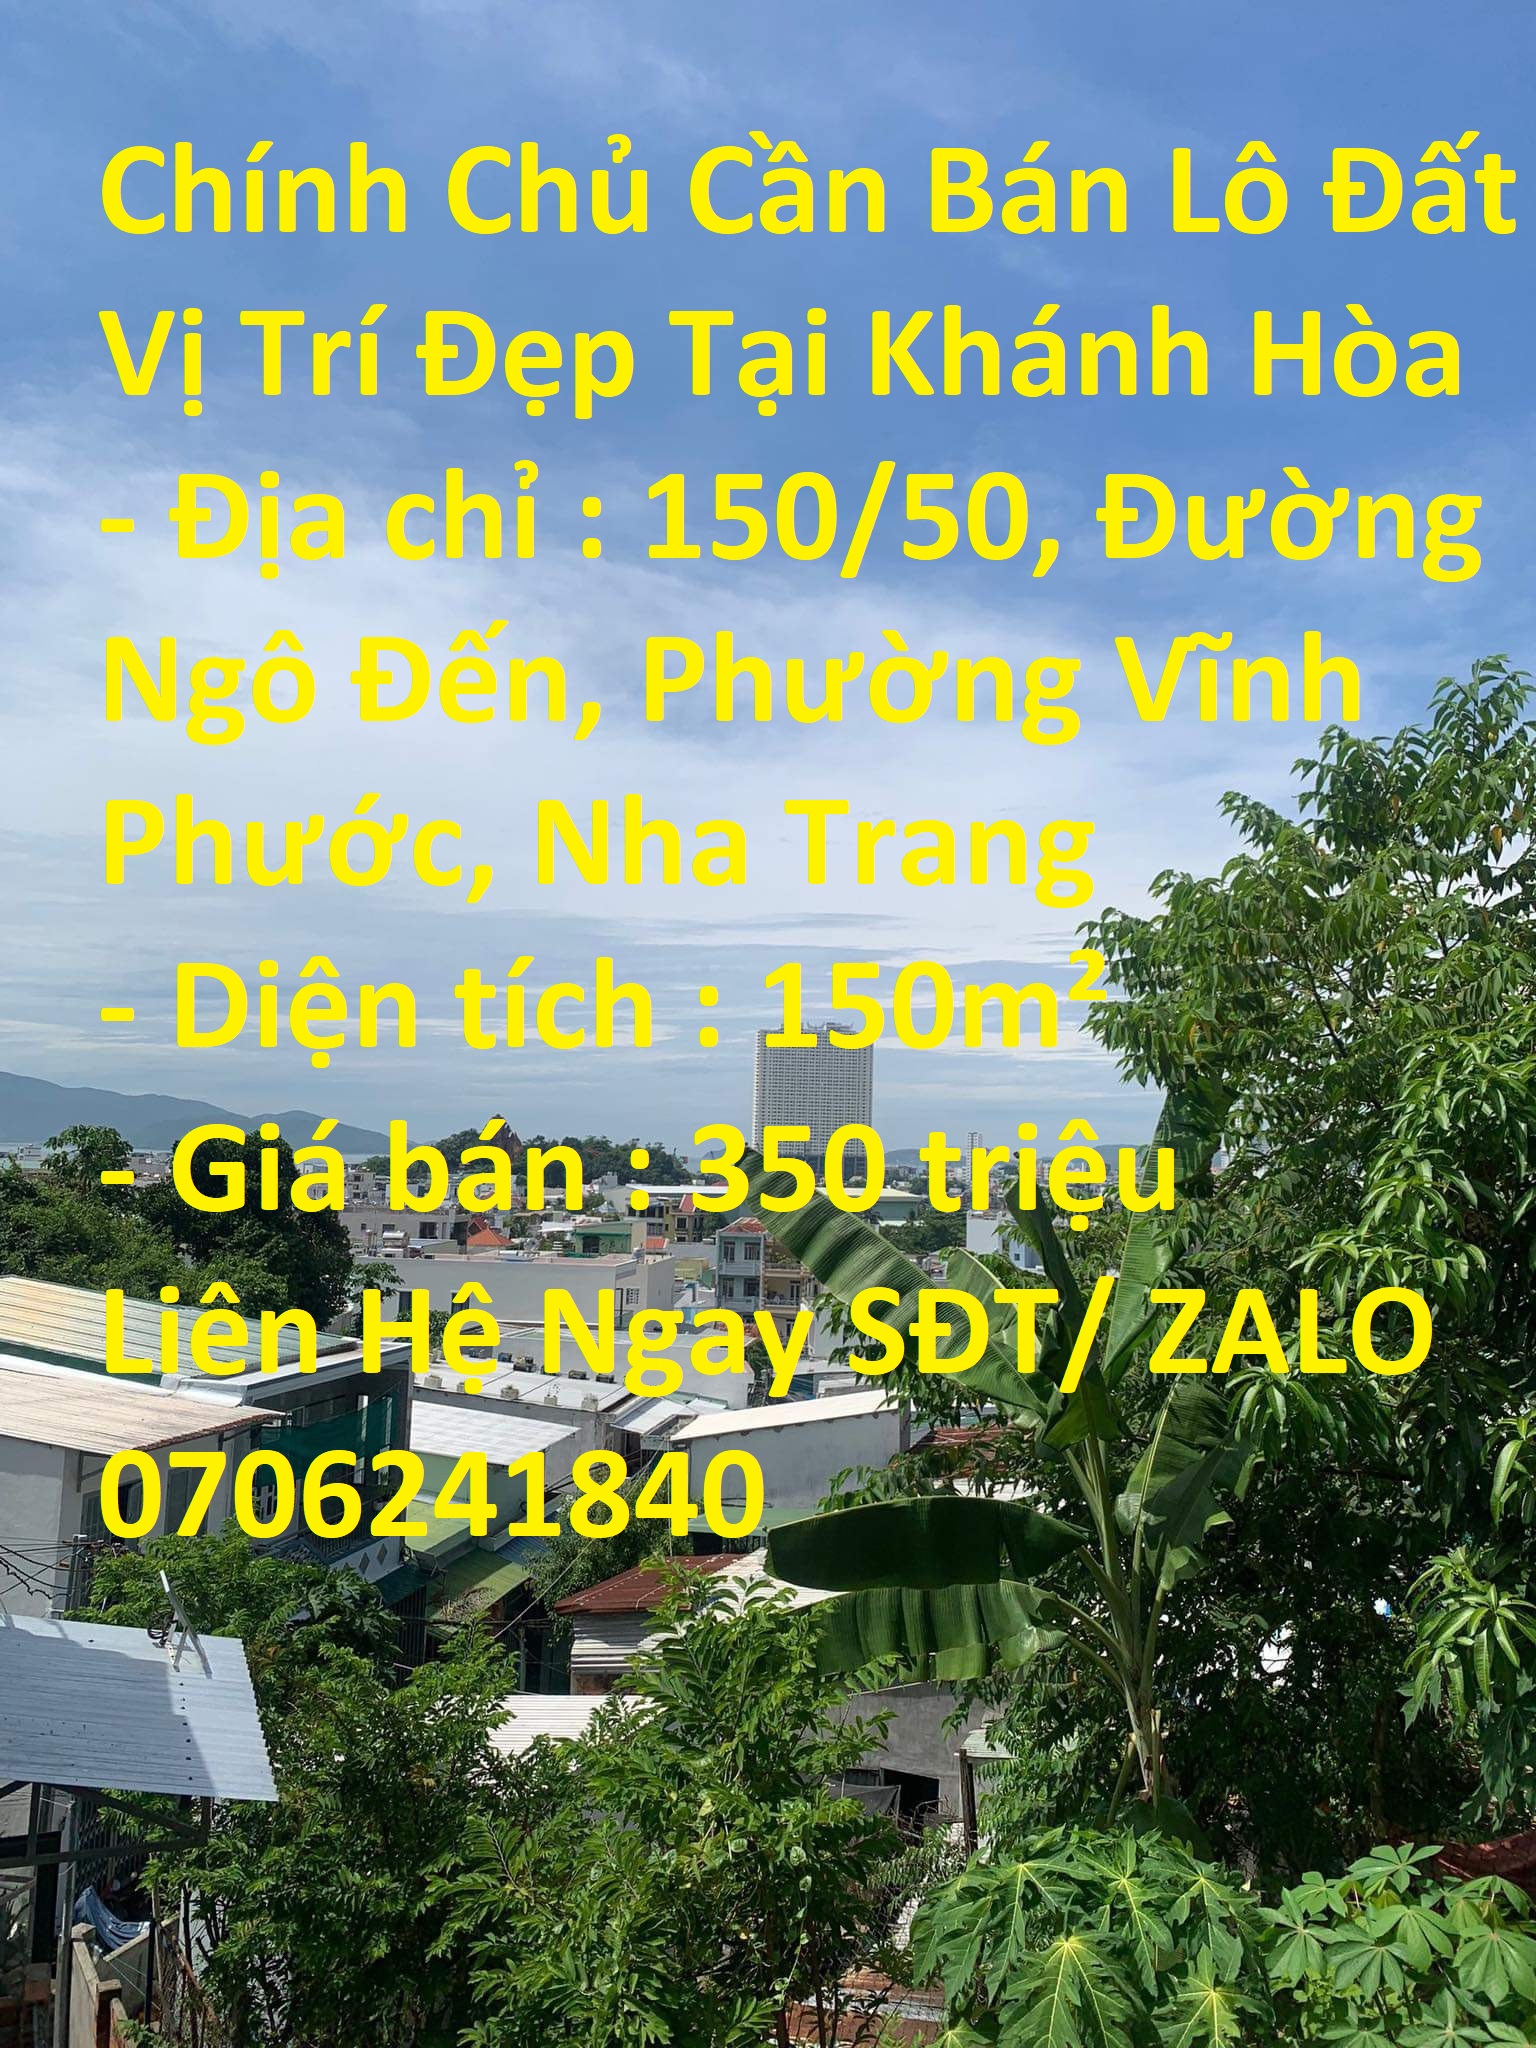 Chính Chủ Cần Bán Lô Đất  Phường Vĩnh Phước, Nha Trang 13902656